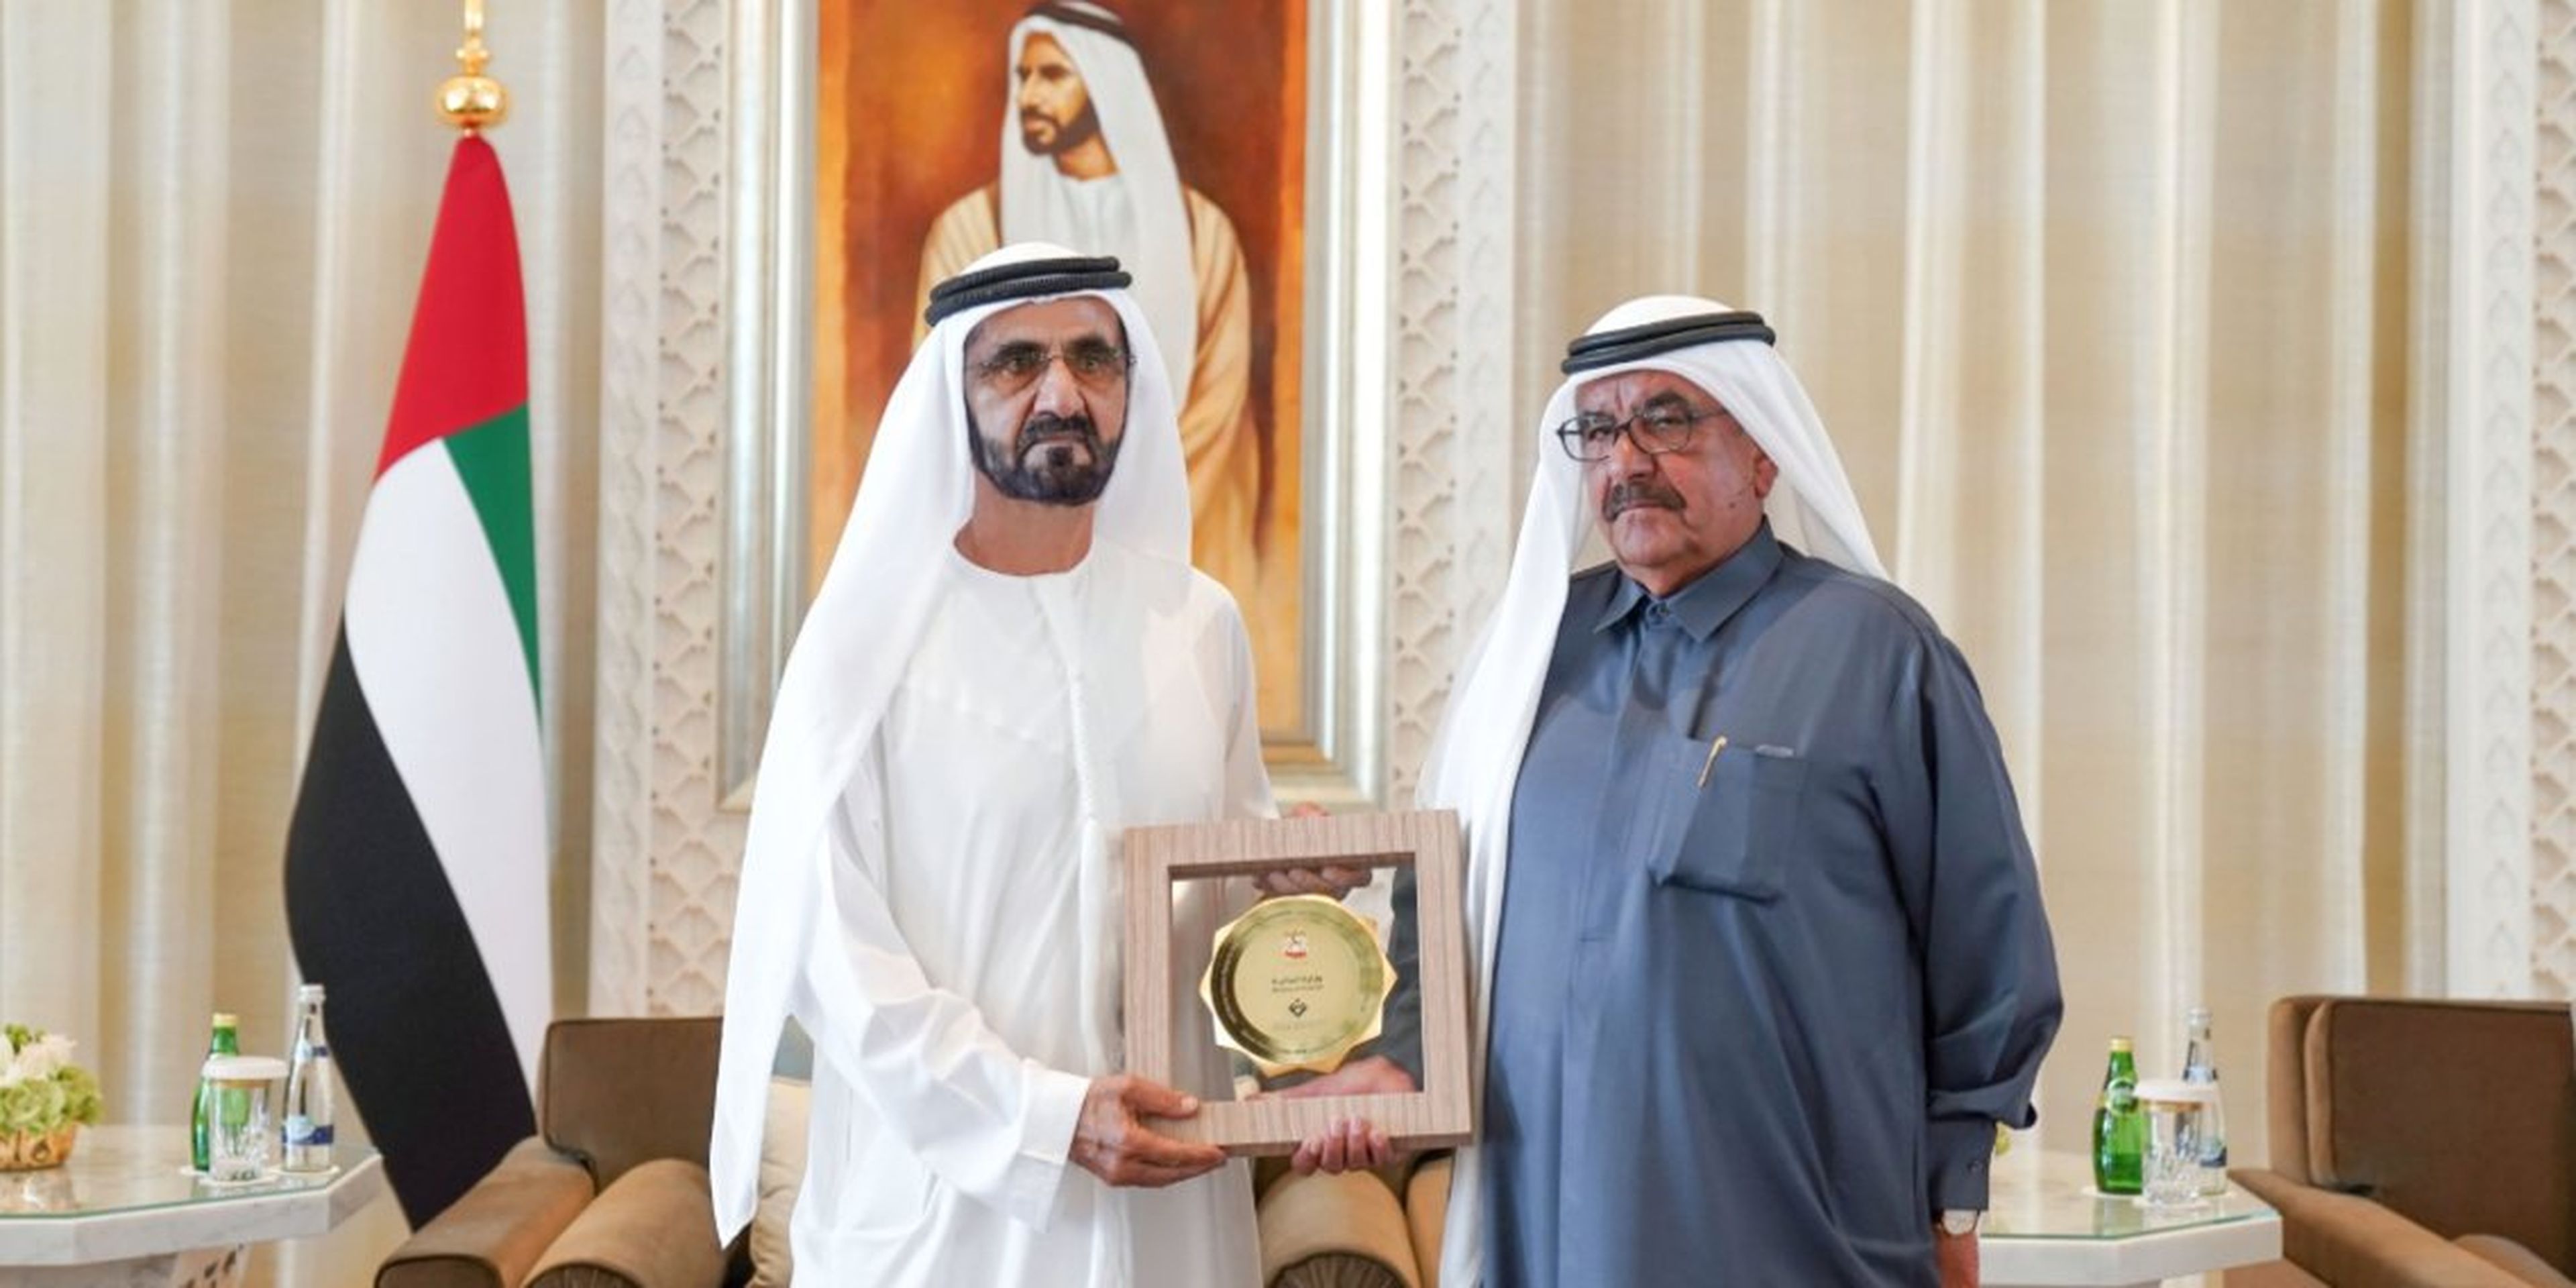 El director de la Federal Competitiveness and Statistics Authority, Abdulla Nasser Lootah (dcha.) recoge su premio de mano del emir de Dubai y primer ministro de EAU, Sheikh Mohammed bin Rashid al-Maktoum, el 27 de enero de 2019.